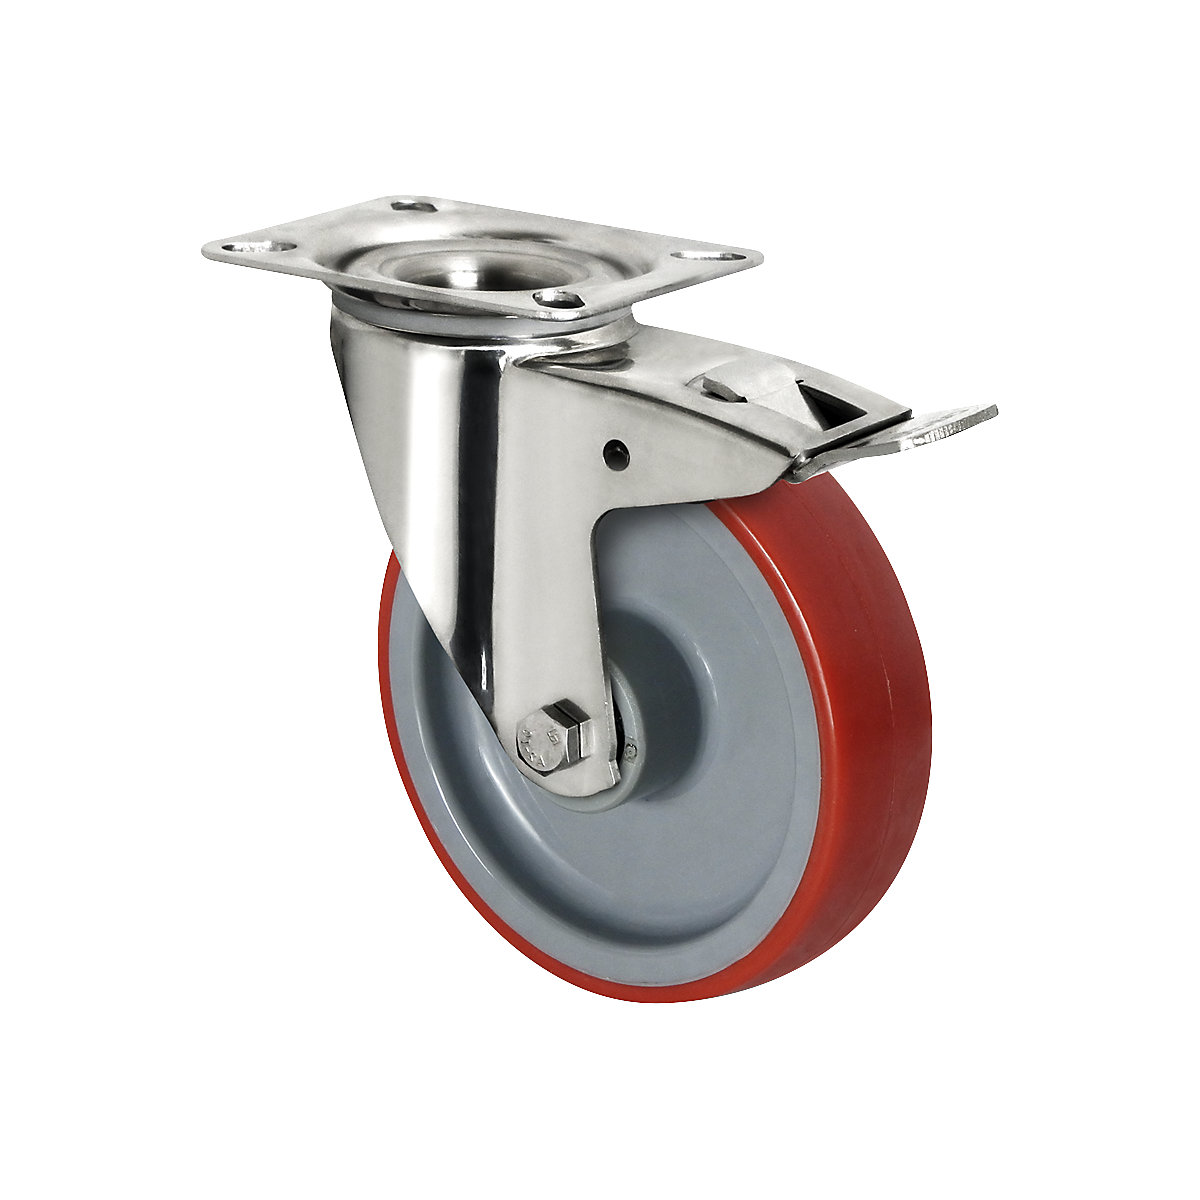 Roulette polyuréthane sur jante polyamide – eurokraft basic, Ø x largeur roue 160 x 50 mm, à partir de 2 pièces, roulette pivotante avec blocage double